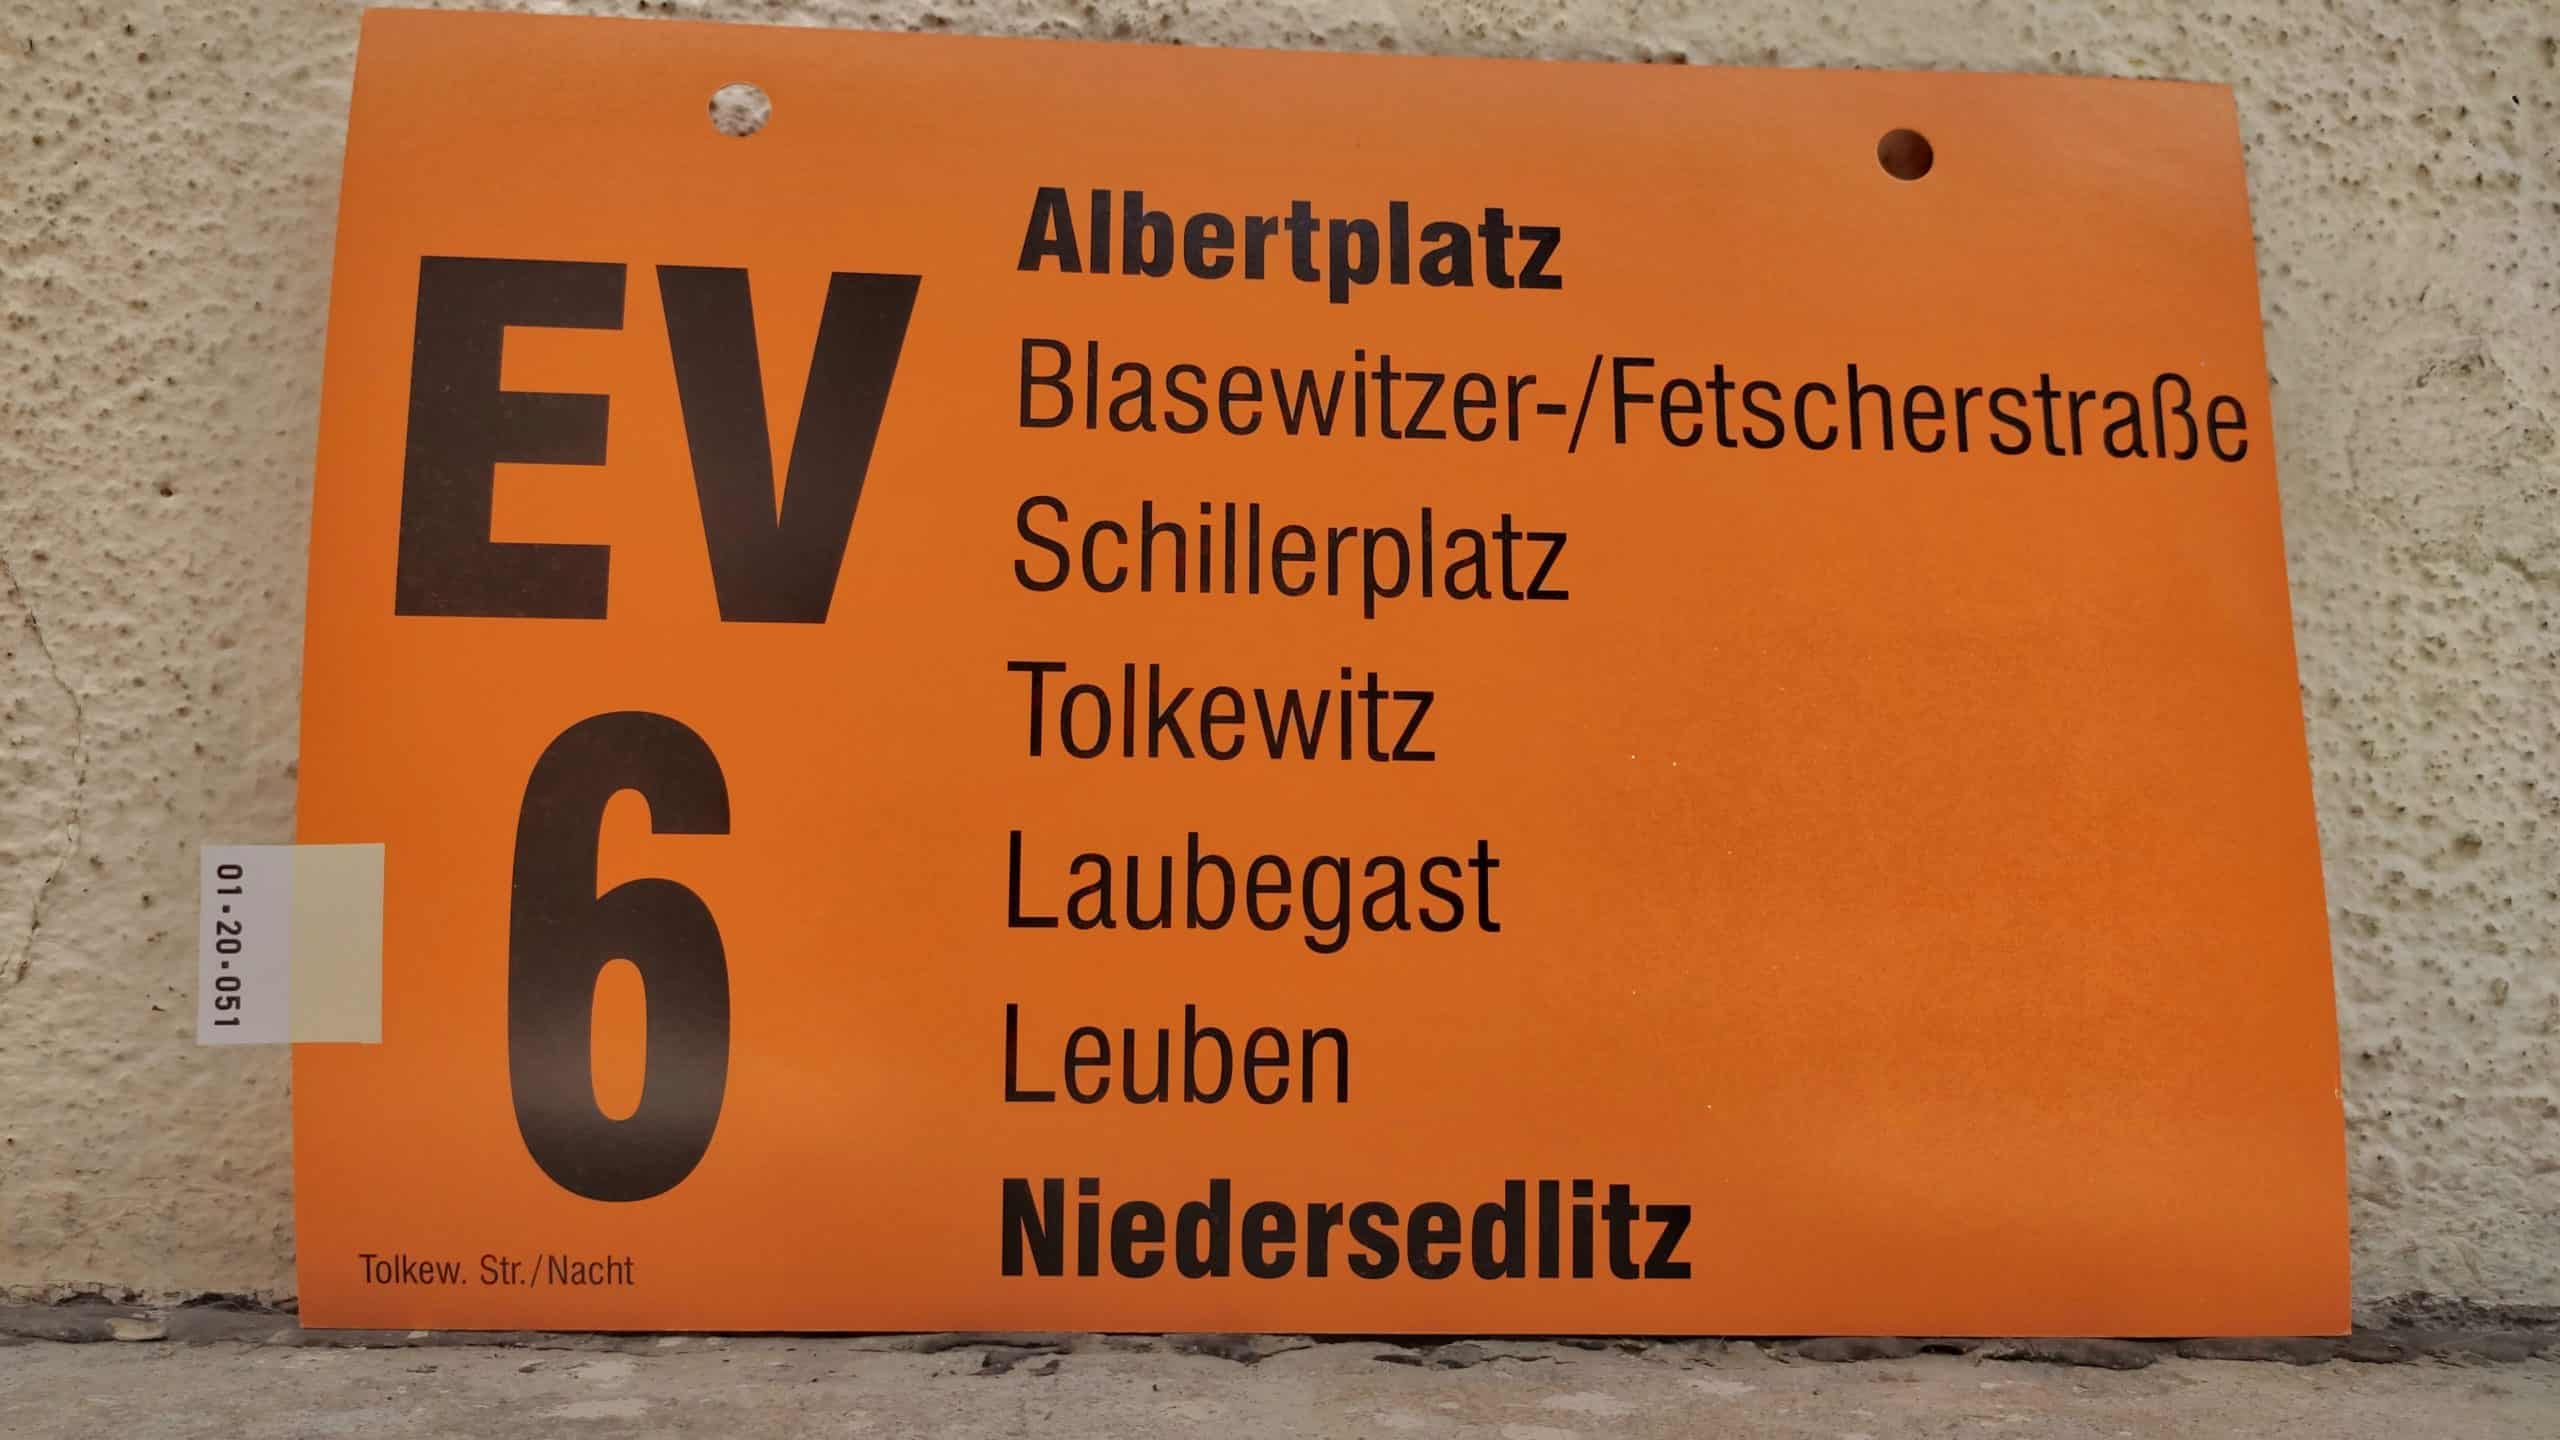 EV 6 Albertplatz – Niedersedlitz